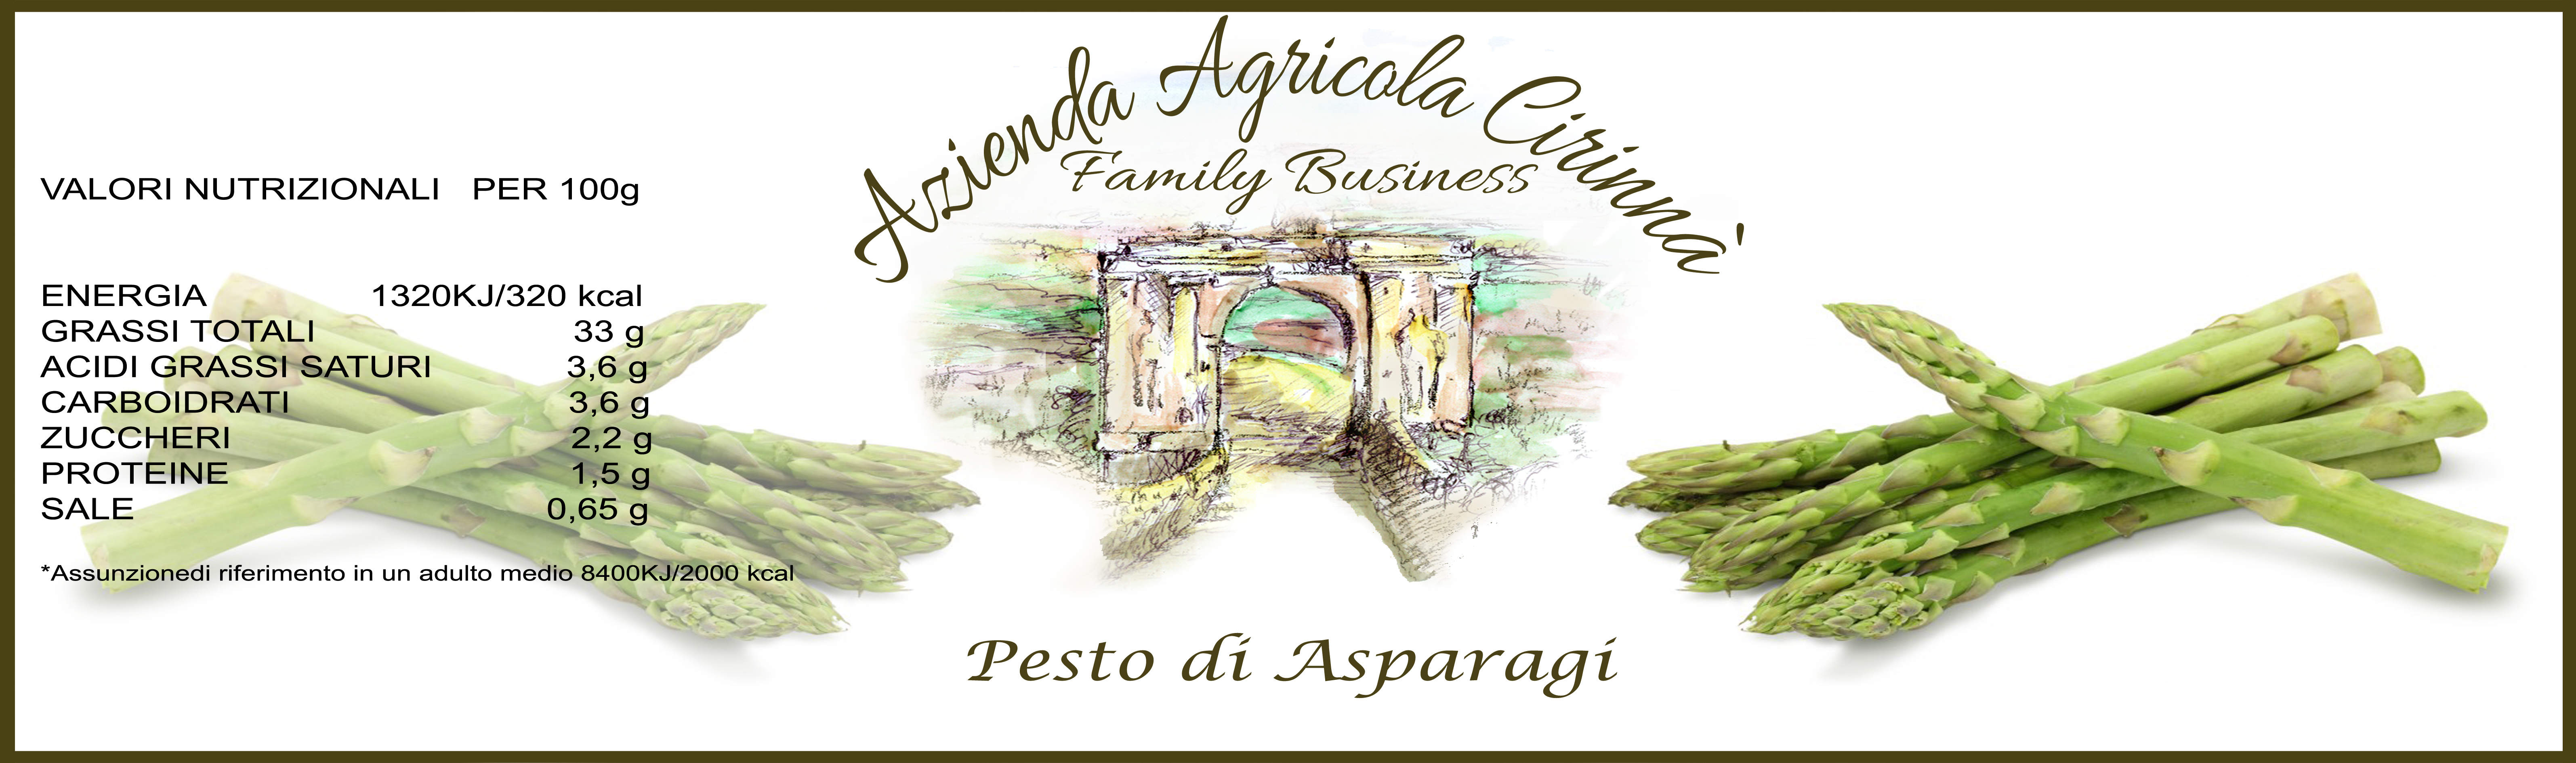 Pesto  di Asparagi dei Monti Iblei  vasetto da 190 gr